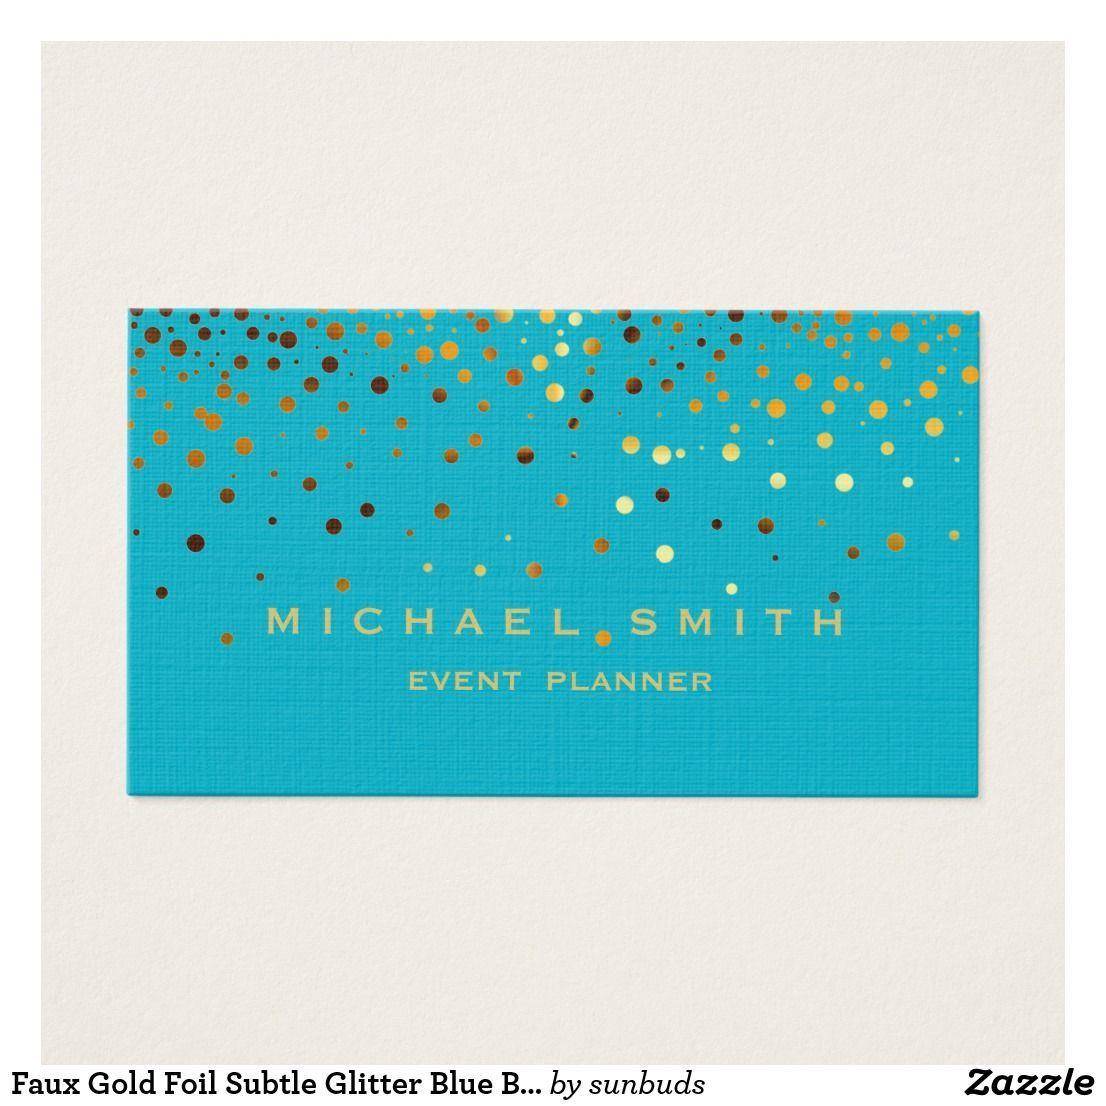 Subtle Glitter Logo - Faux Gold Foil Subtle Glitter Blue Business Card. Zazzle Business